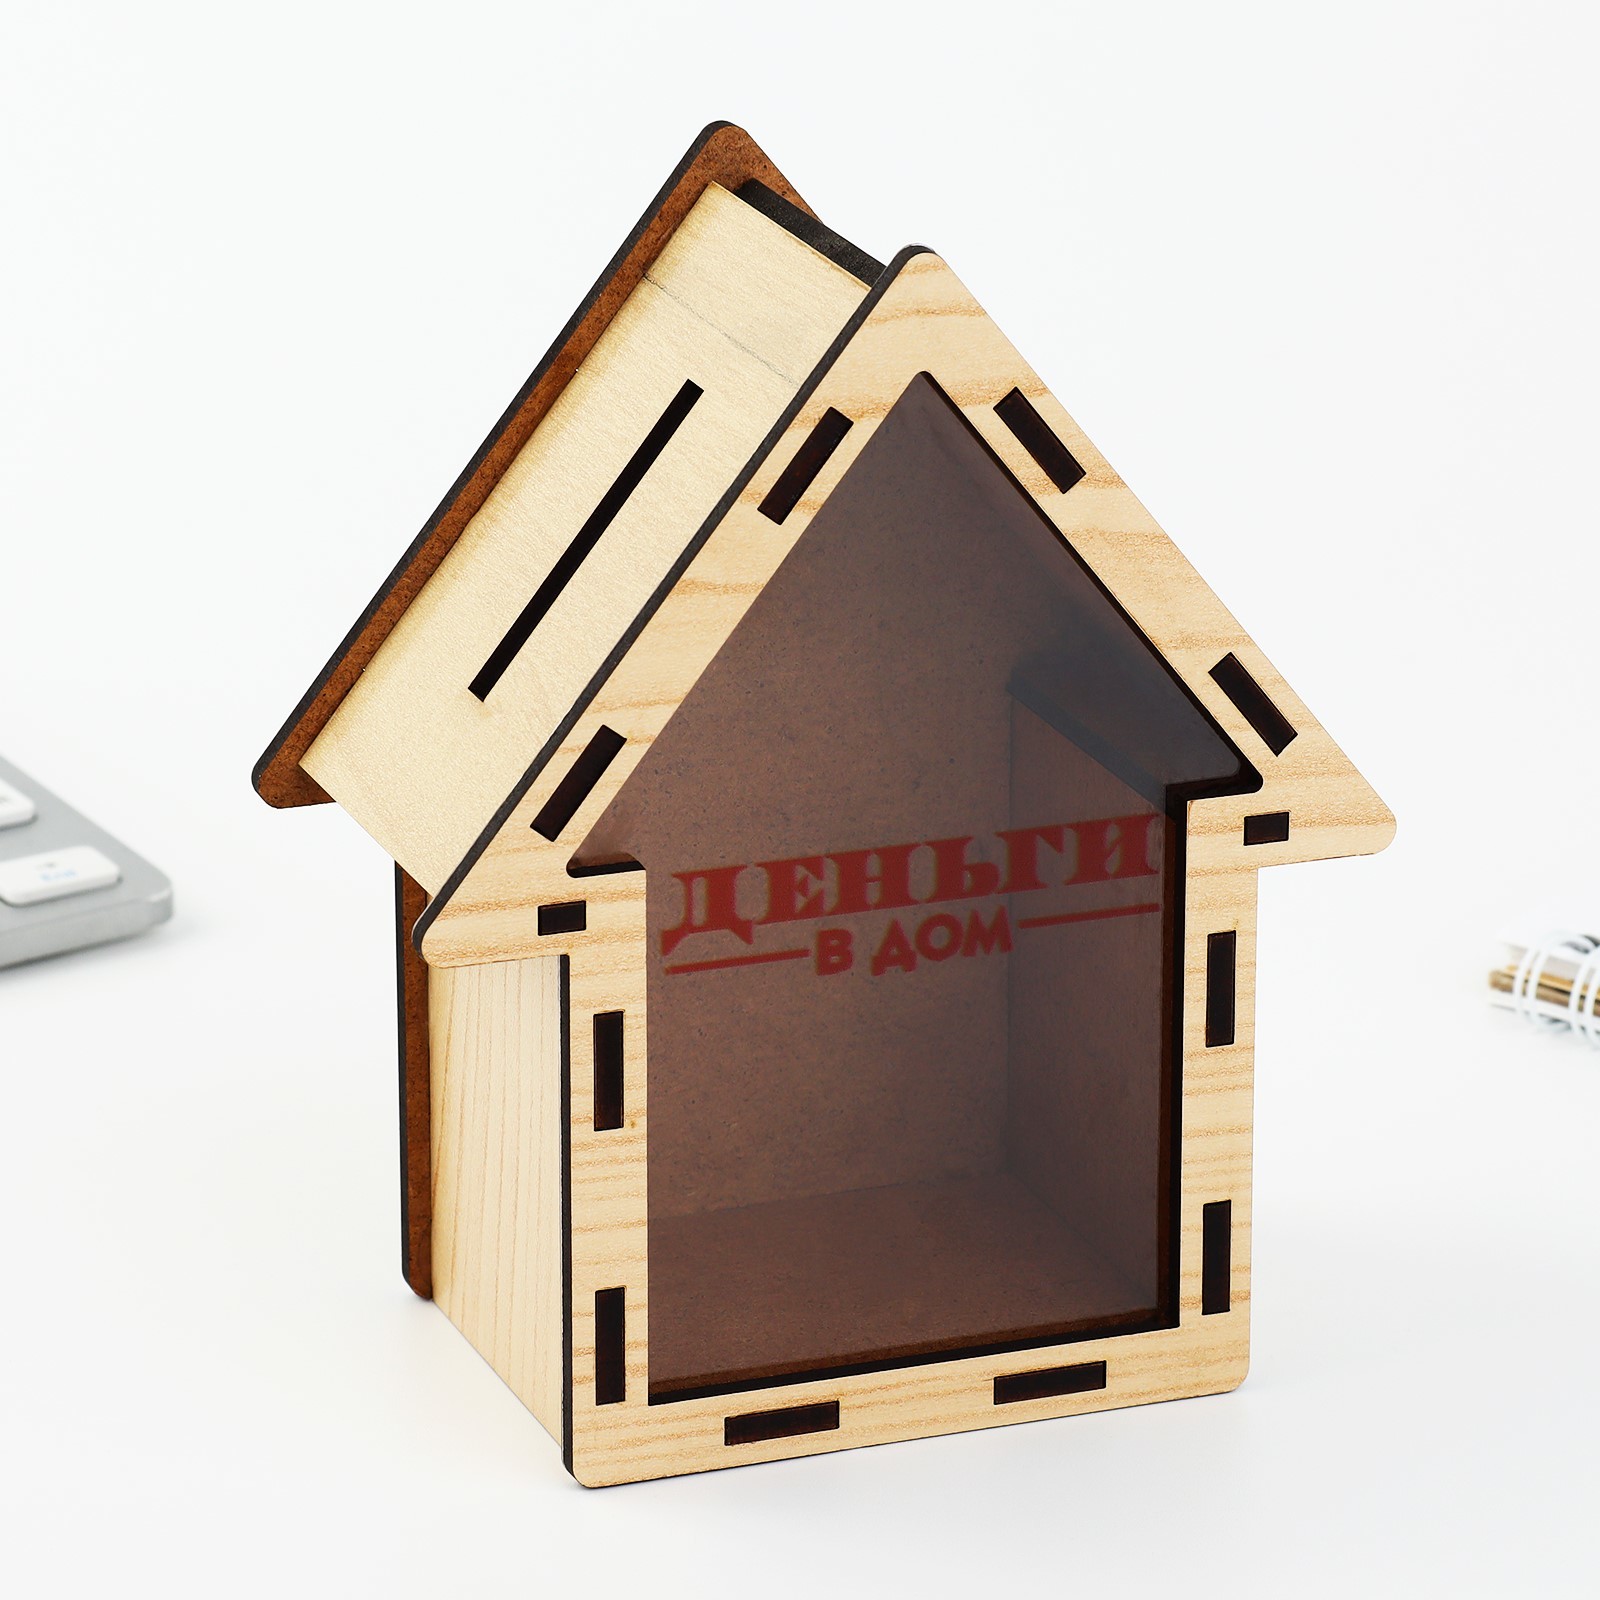 Копилка деревянная «Деньги в дом» (10248775) - Купить по цене от 149.00  руб. | Интернет магазин SIMA-LAND.RU